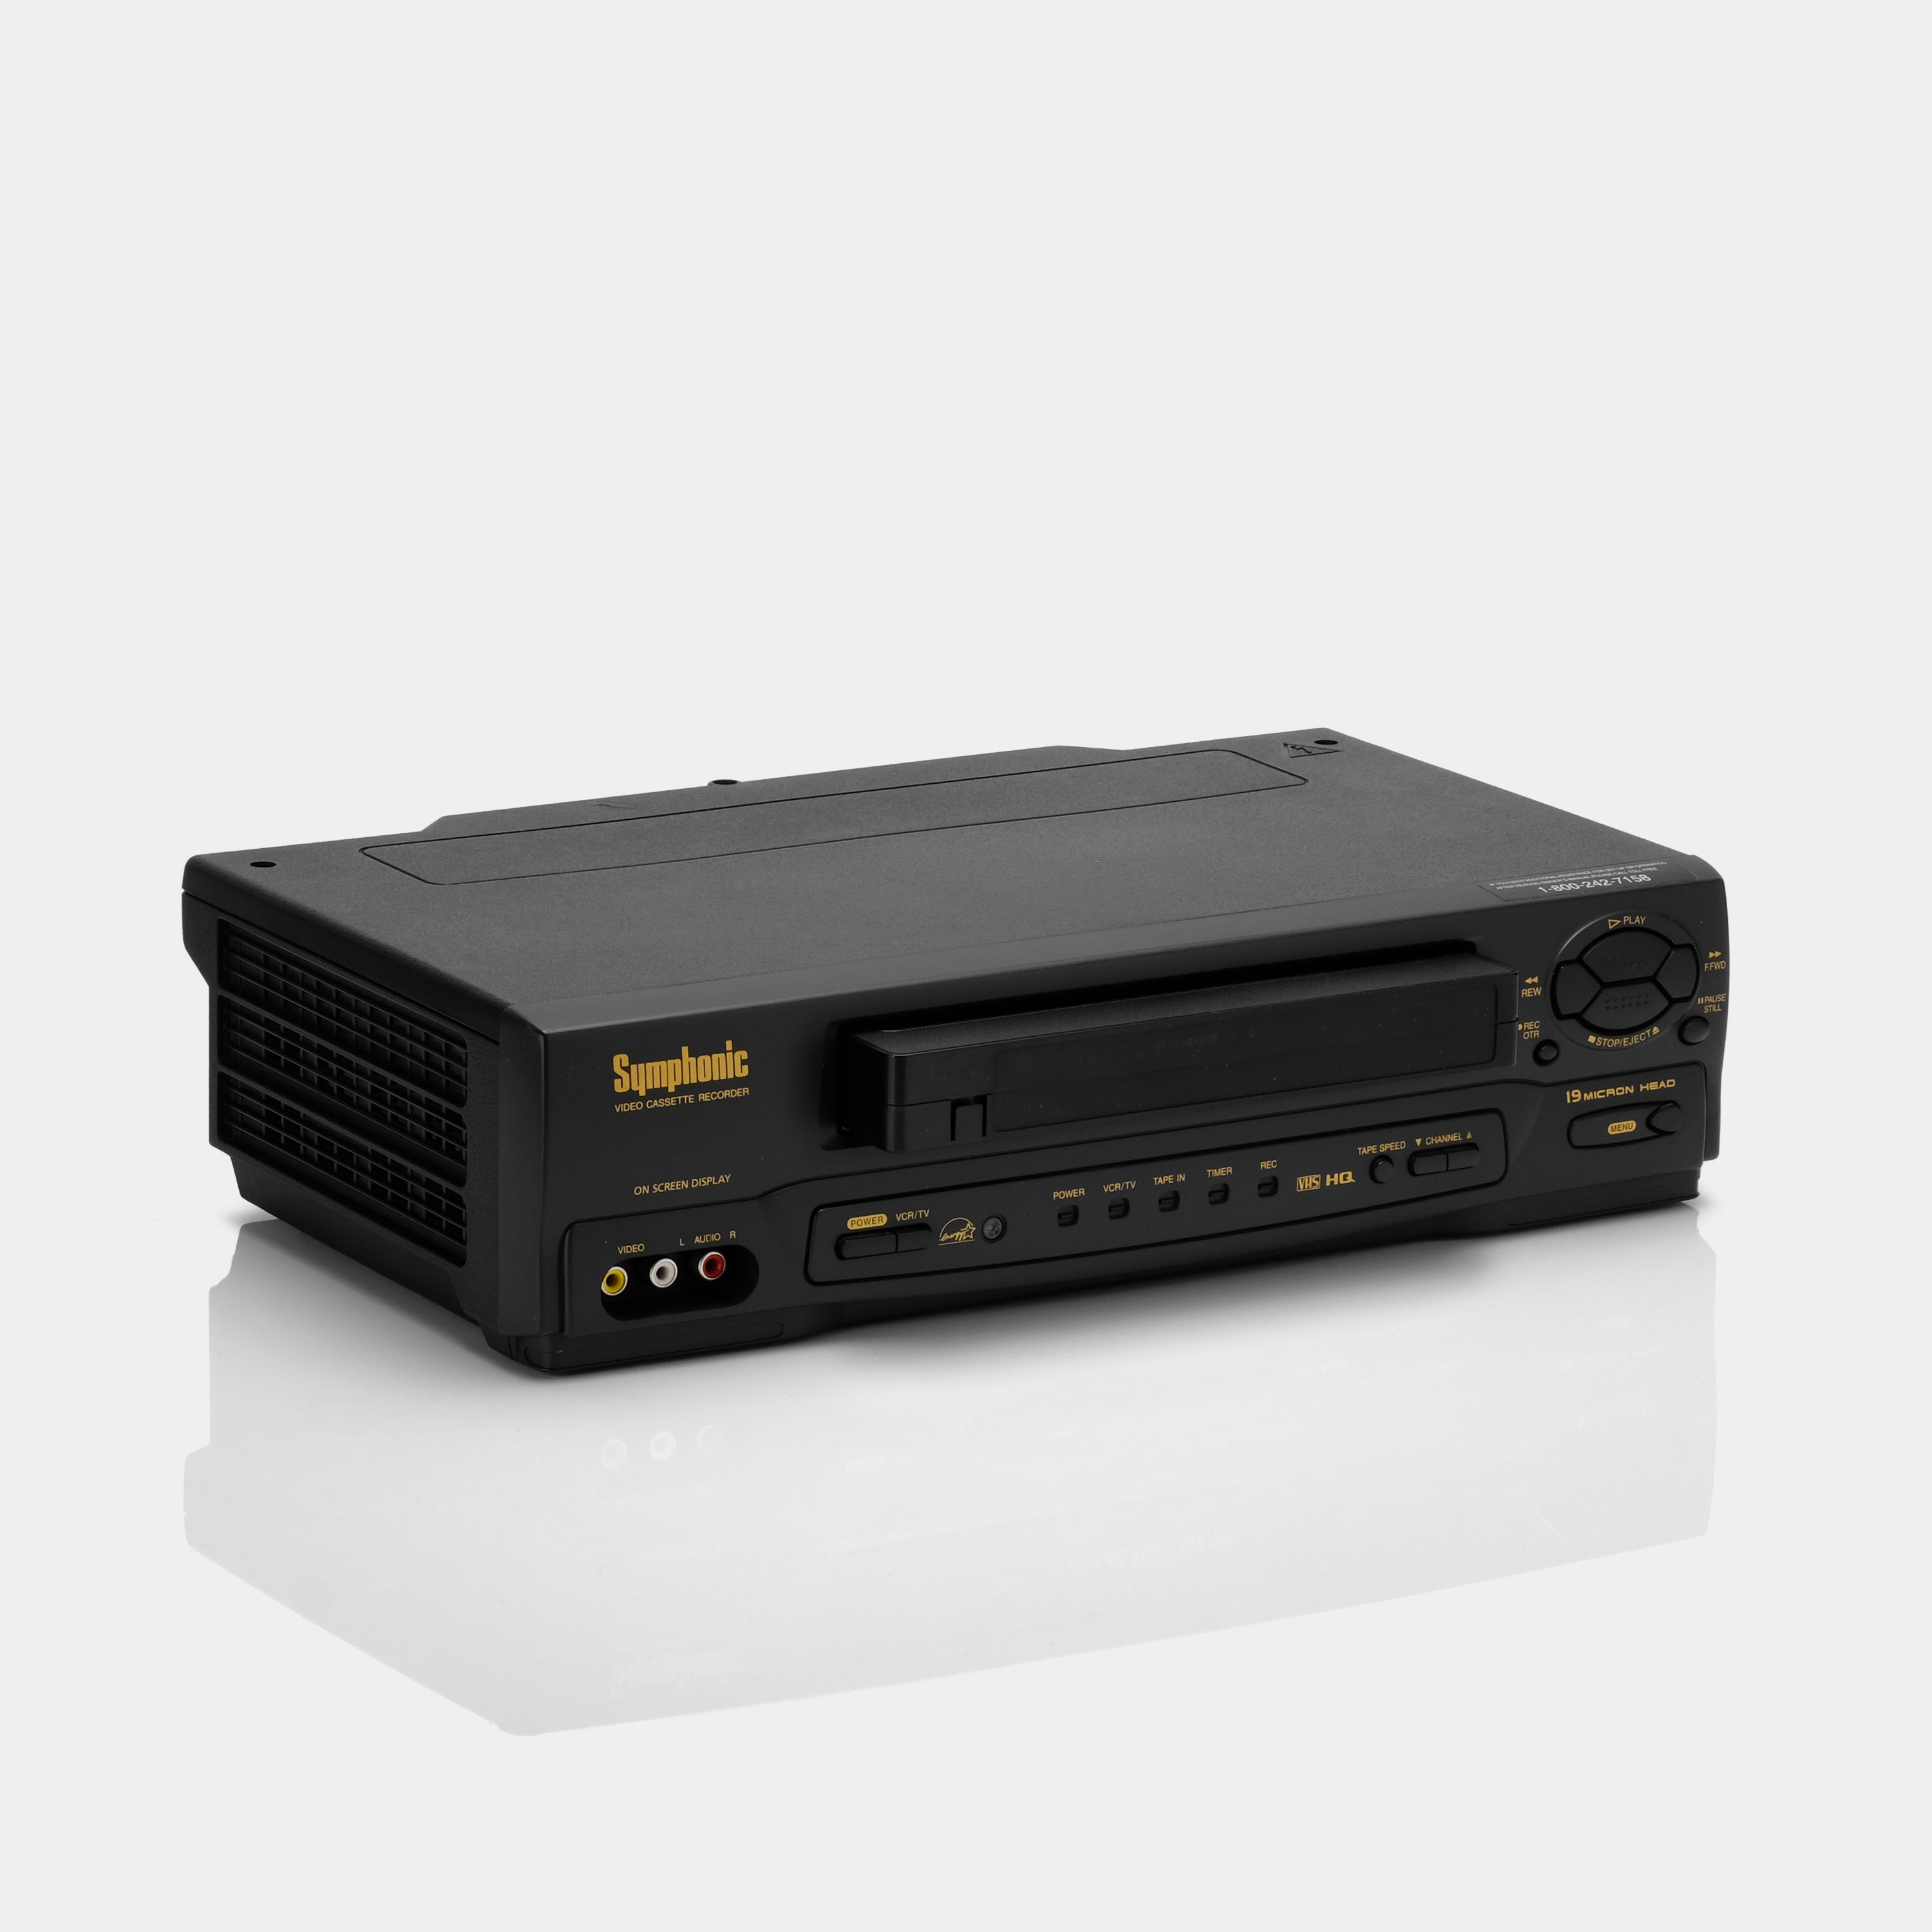 Symphonic VR-701 VCR VHS Player